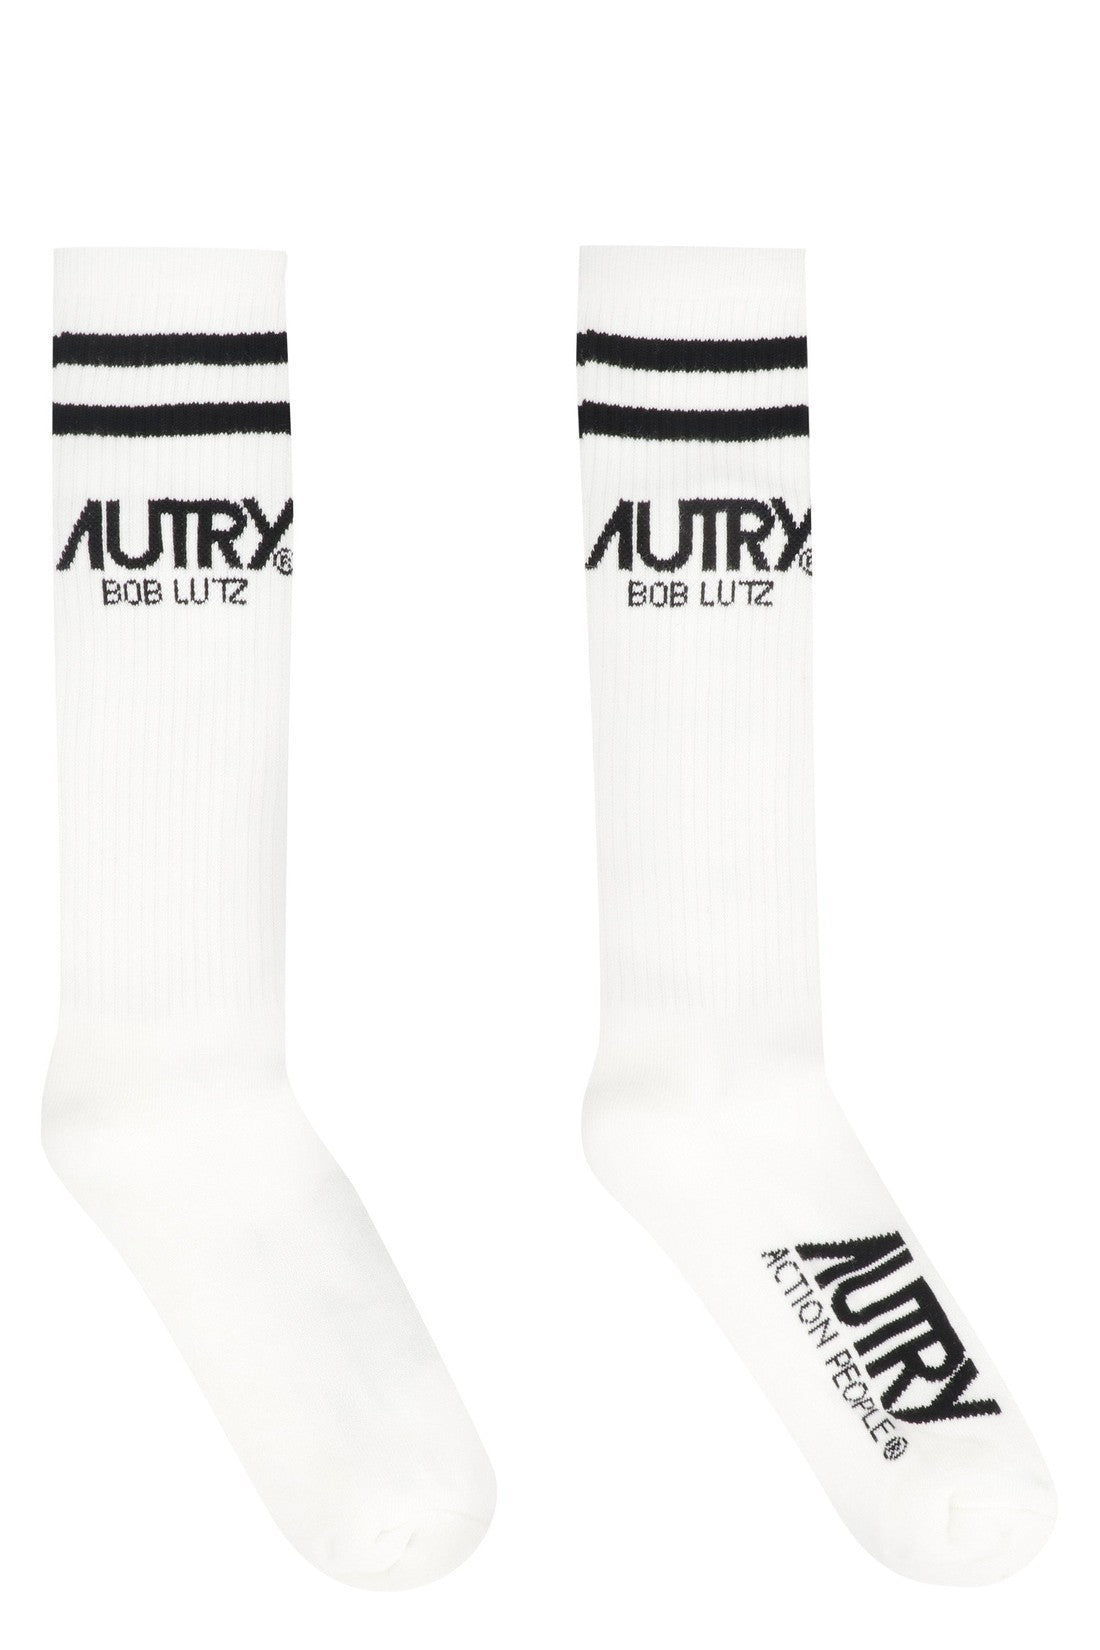 Autry-OUTLET-SALE-Logo cotton blend socks-ARCHIVIST